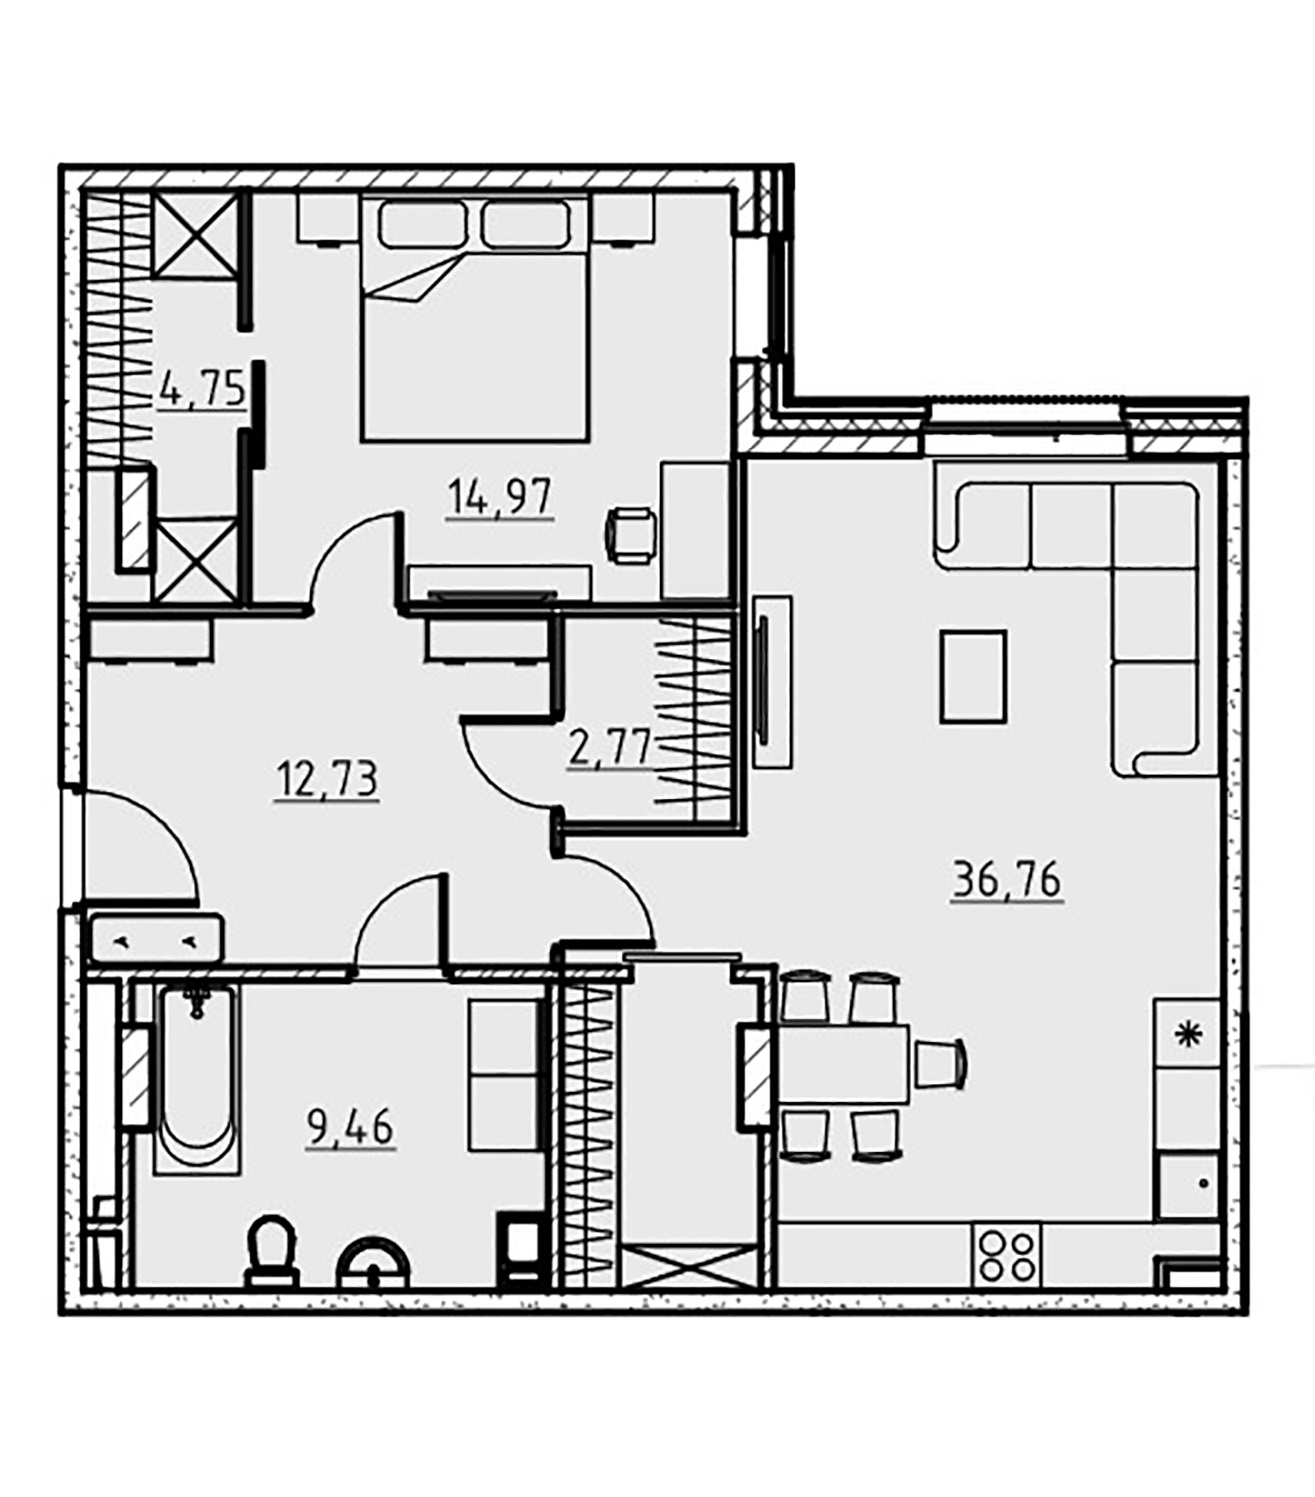 1-комнатная квартира  №13 в Манхэттен: 81.6 м², этаж 5 - купить в Санкт-Петербурге